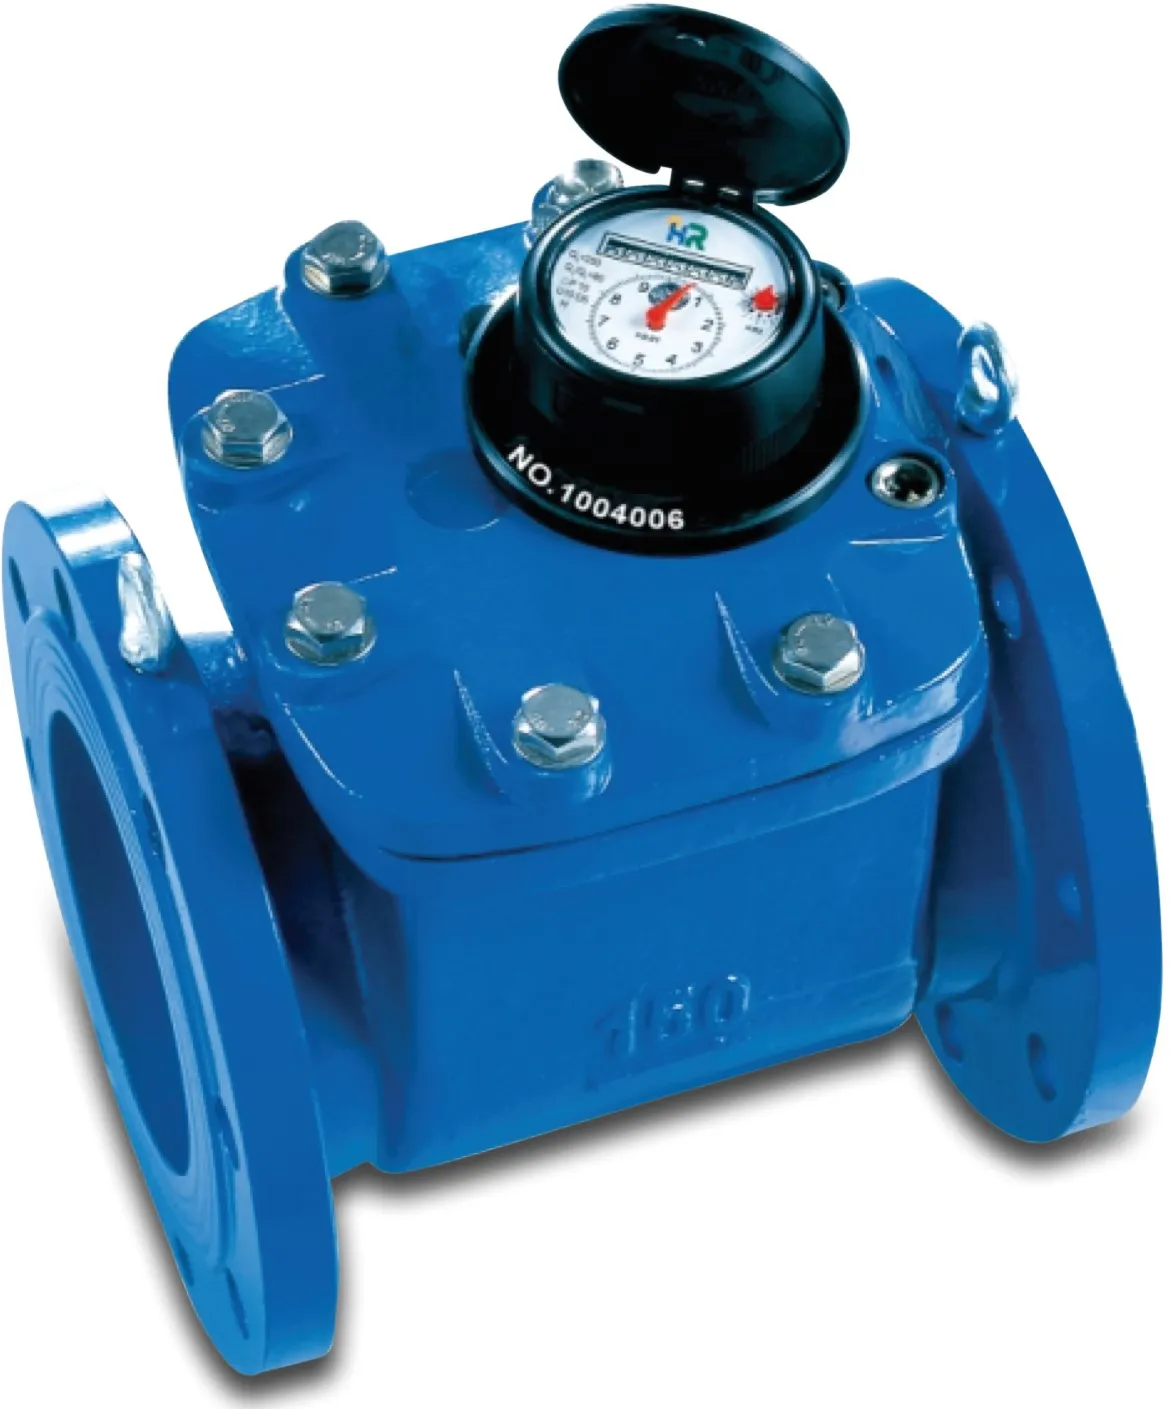 Azud Watermeter messing DN50 flens 40m³/h blauw type Woltman